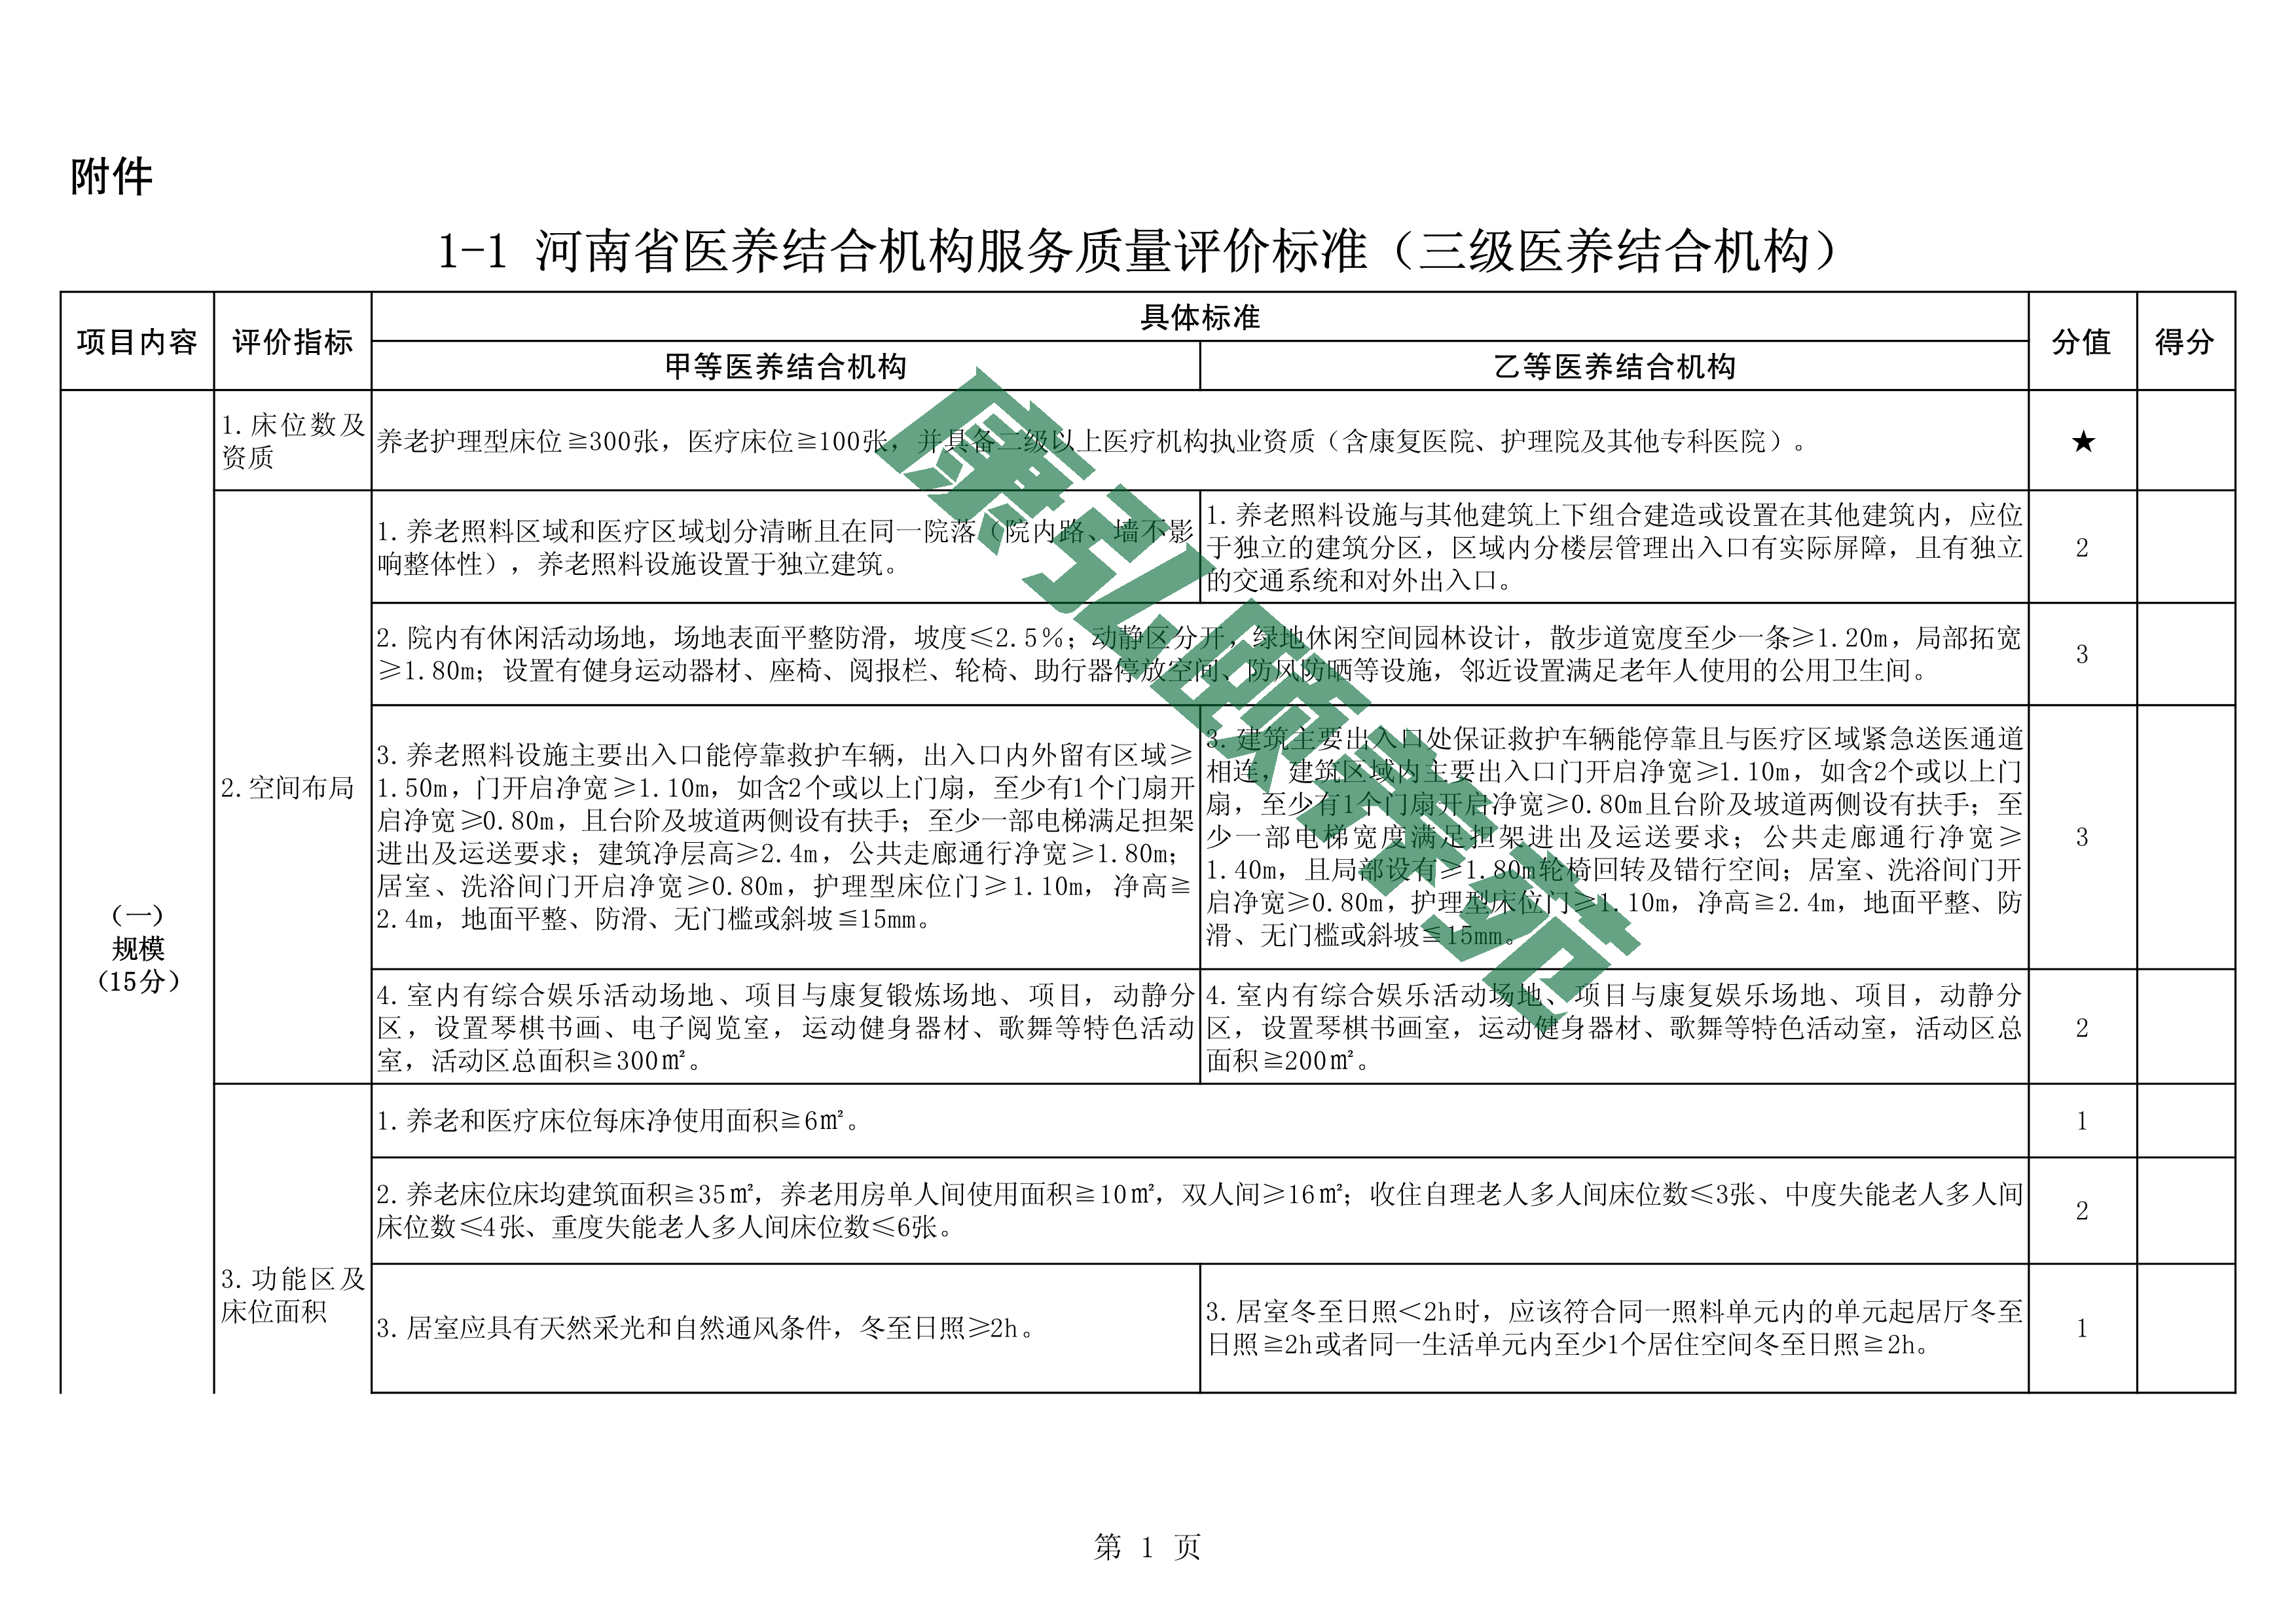 河南省医养结合机构服务质量评价标准(征求意见稿)